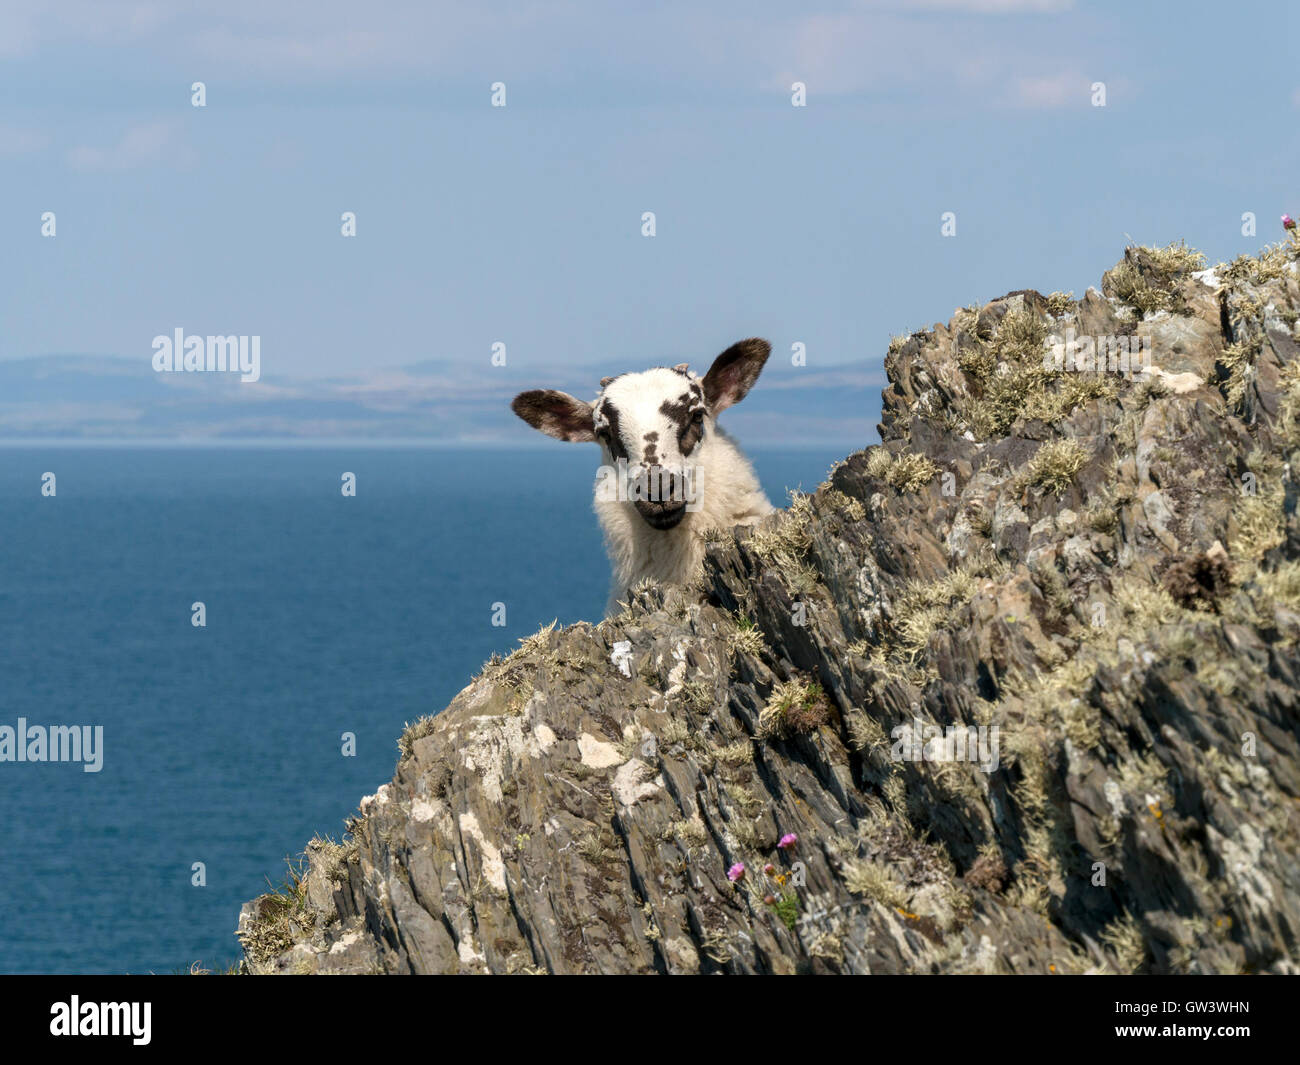 Jeune agneau avec de grandes oreilles peeping autour de rock, à l'île de Colonsay, Ecosse, Royaume-Uni. Banque D'Images